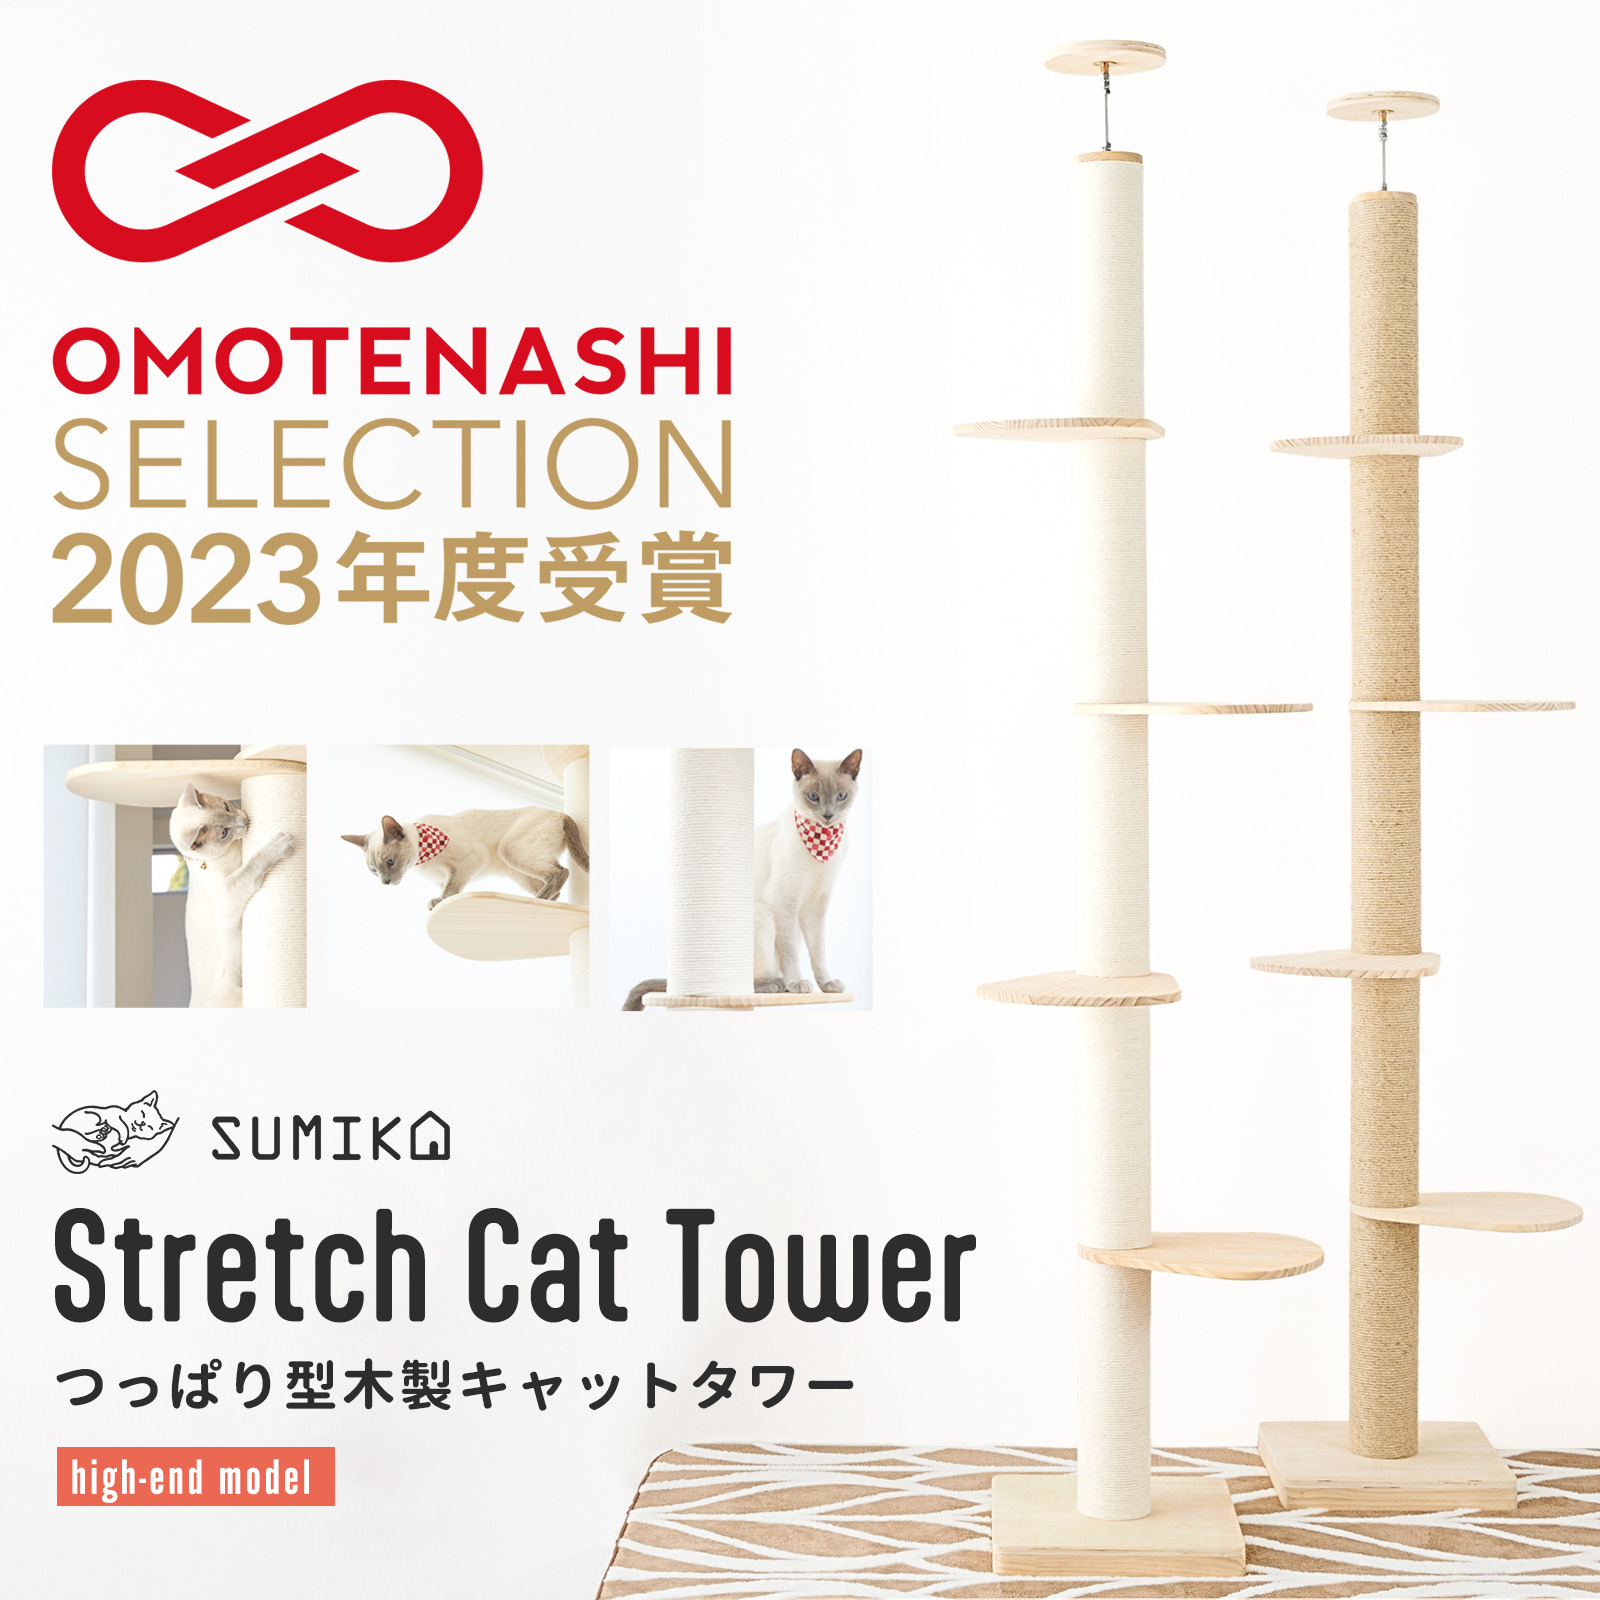 キャットタワー 突っ張り 木製 大型猫 おしゃれ スリム 猫タワー SUMIKA 突っ張り型木製キャットタワー (ハイエンドモデル)